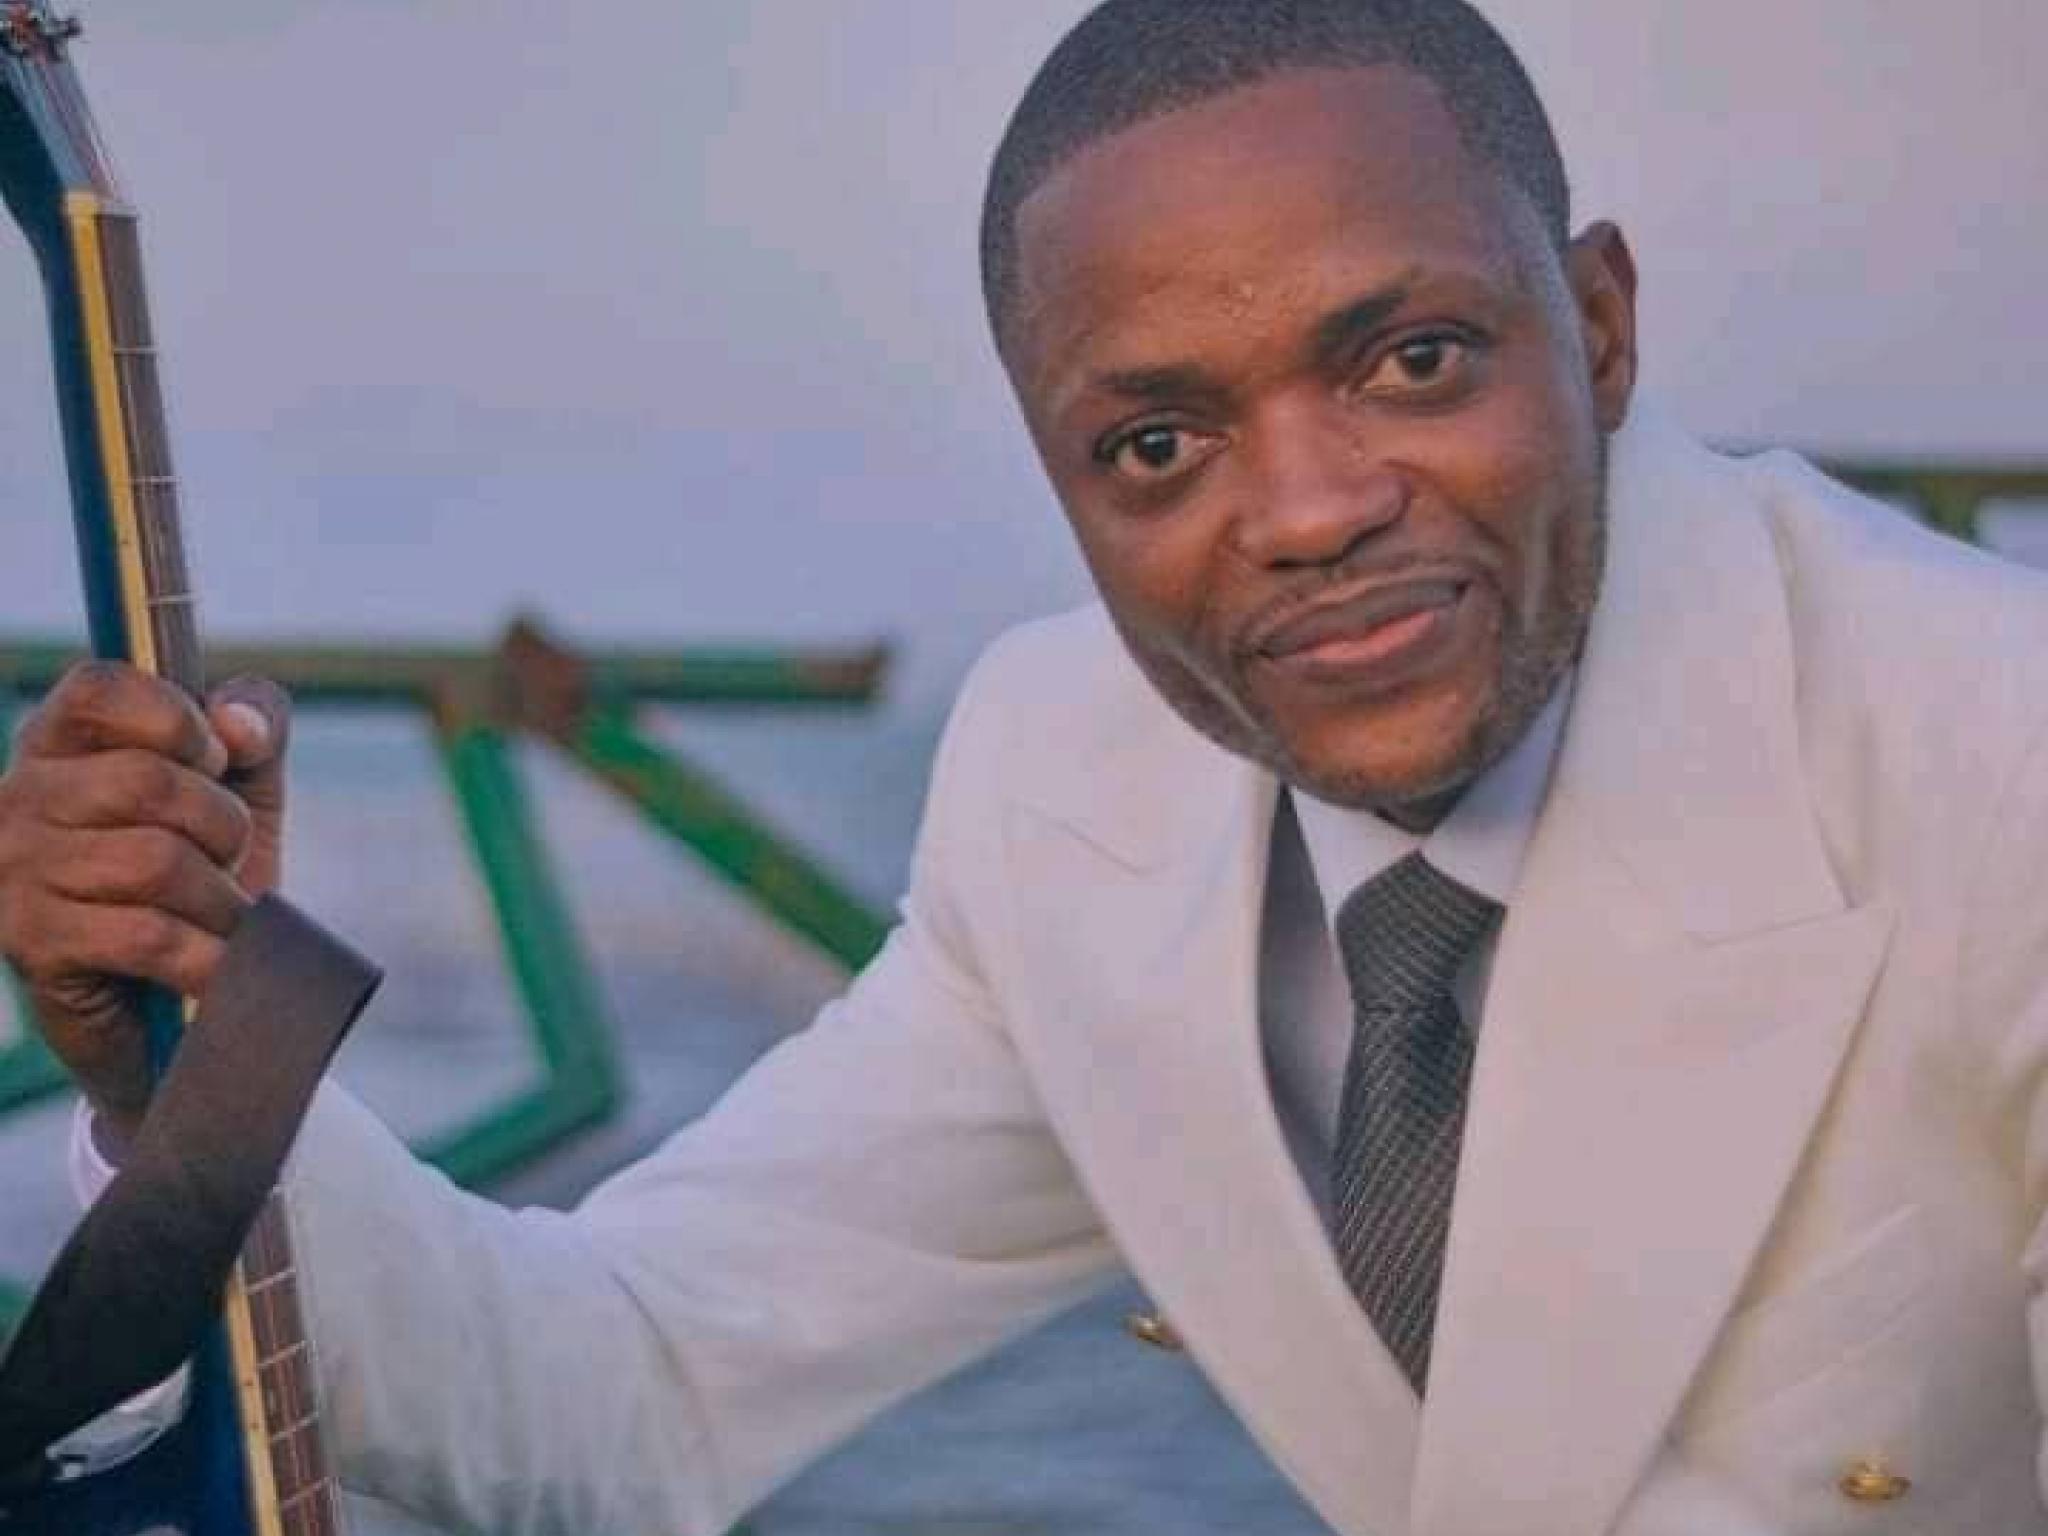 L'artiste chanteur Chadrac Lubembo